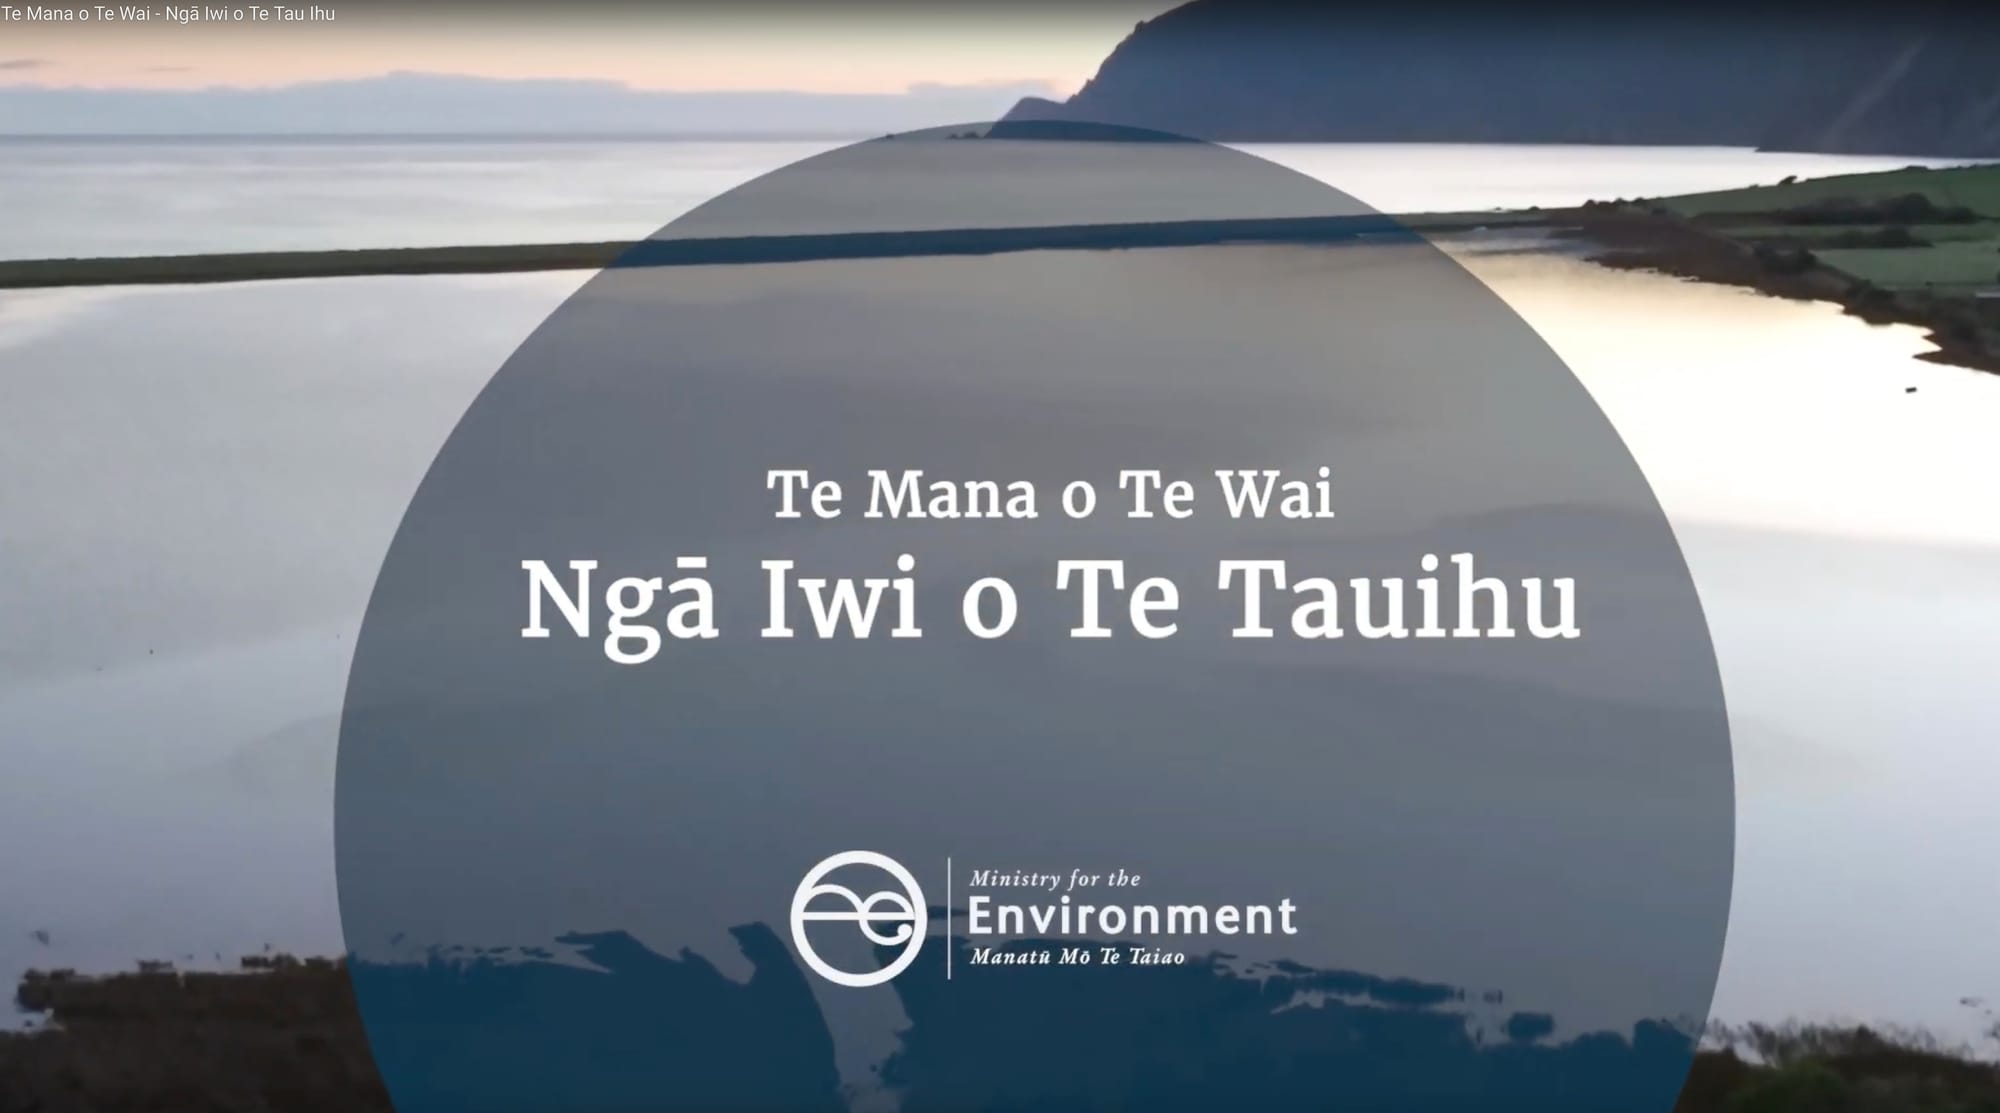 Te Mana o Te Wai - Ngā iwi o Te Tauihu